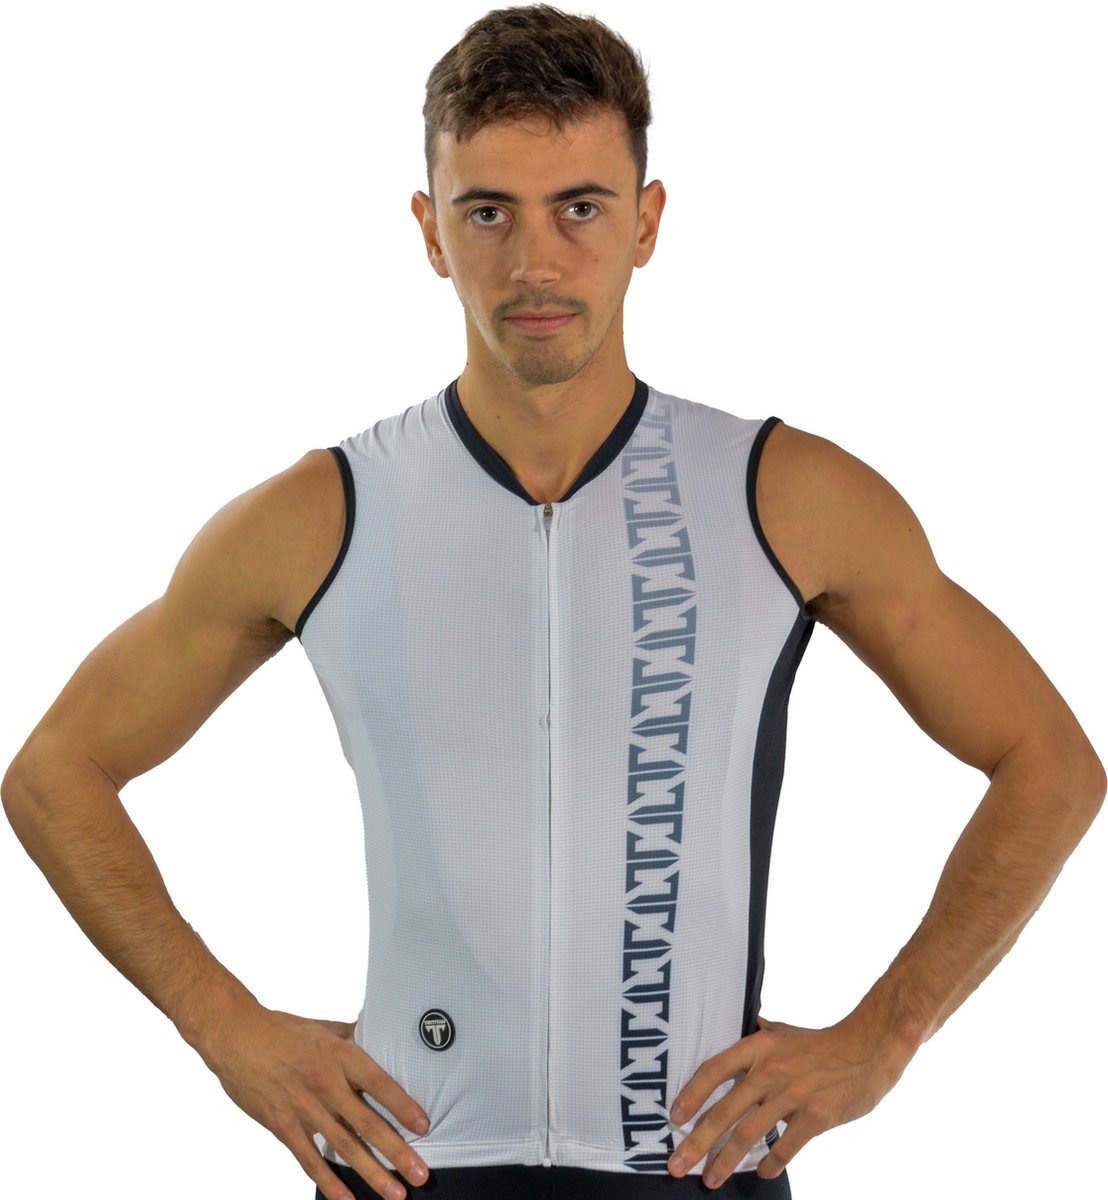 TriTiTan Titanium Male Pro No Sleeve Cycling Jersey - Fietsshirt - Fietstrui - XL